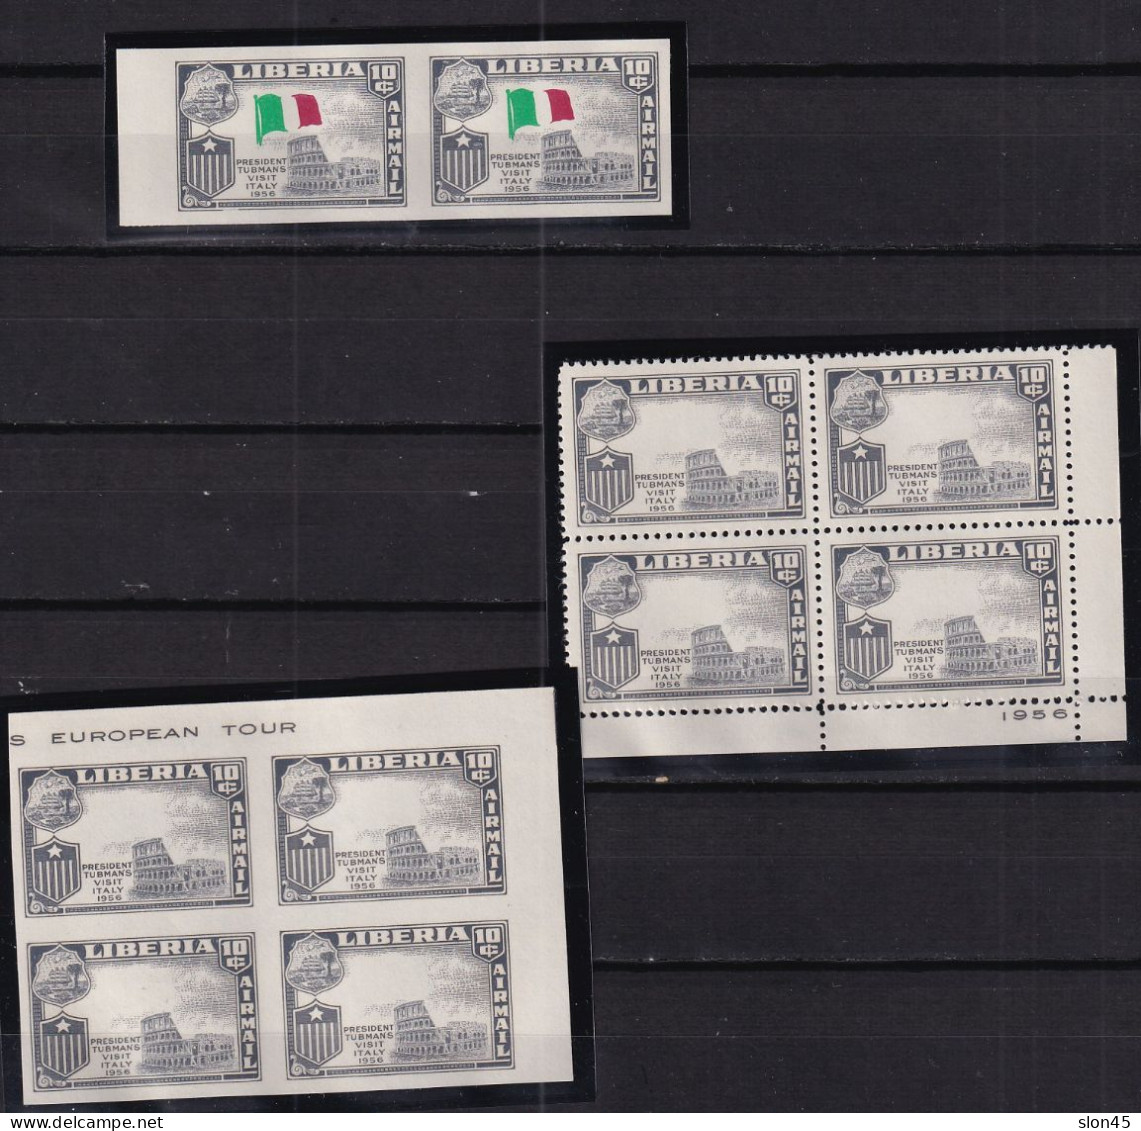 Liberia 1958 Italy Varieties Blocks Of 2 Imperf/perf MNH Flag Missing 16008 - Errori Sui Francobolli